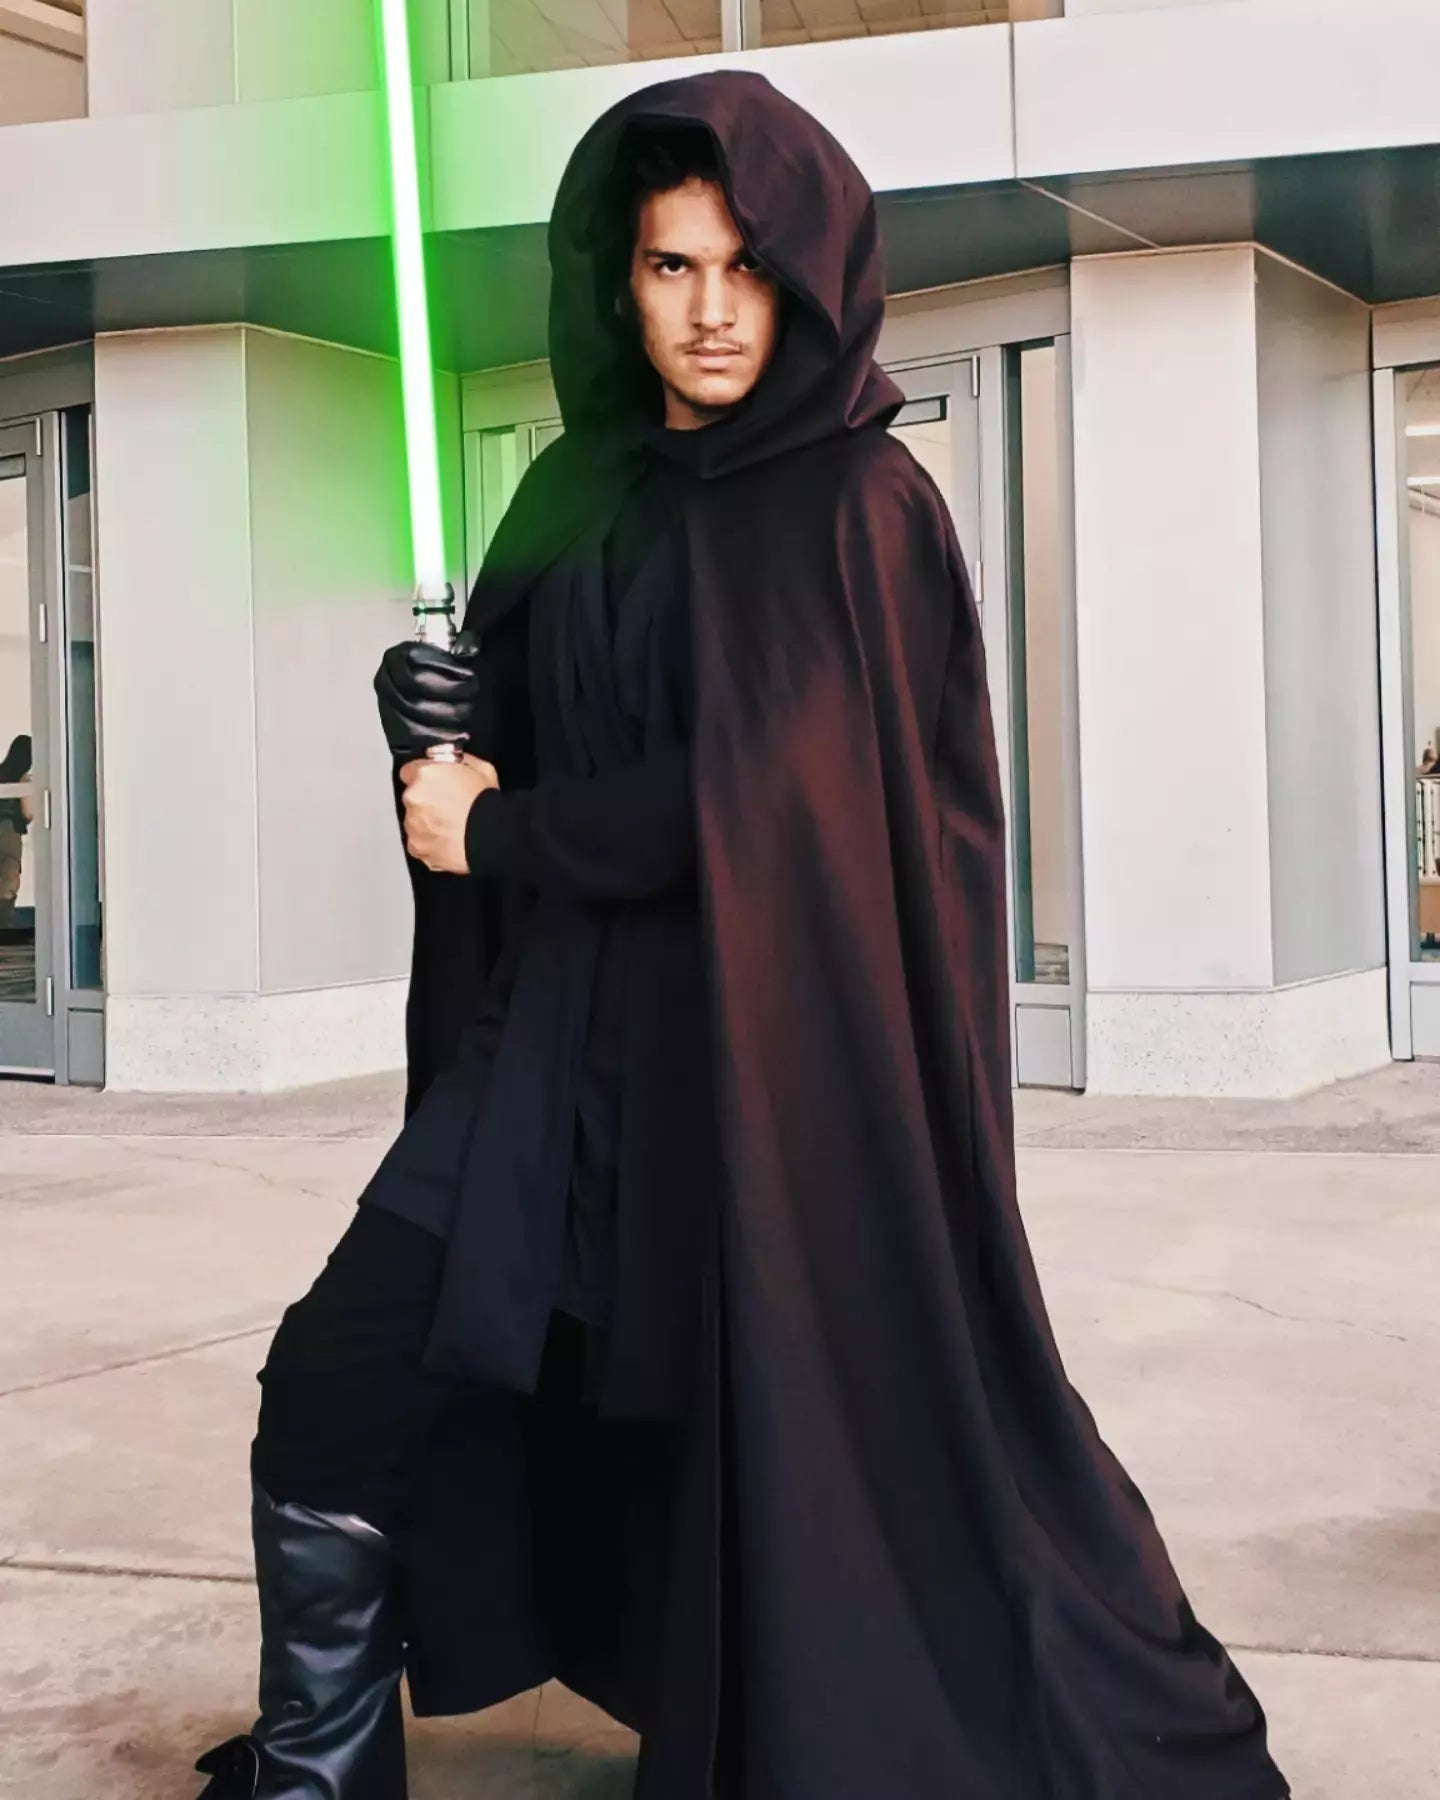 Luke Skywalker costume set